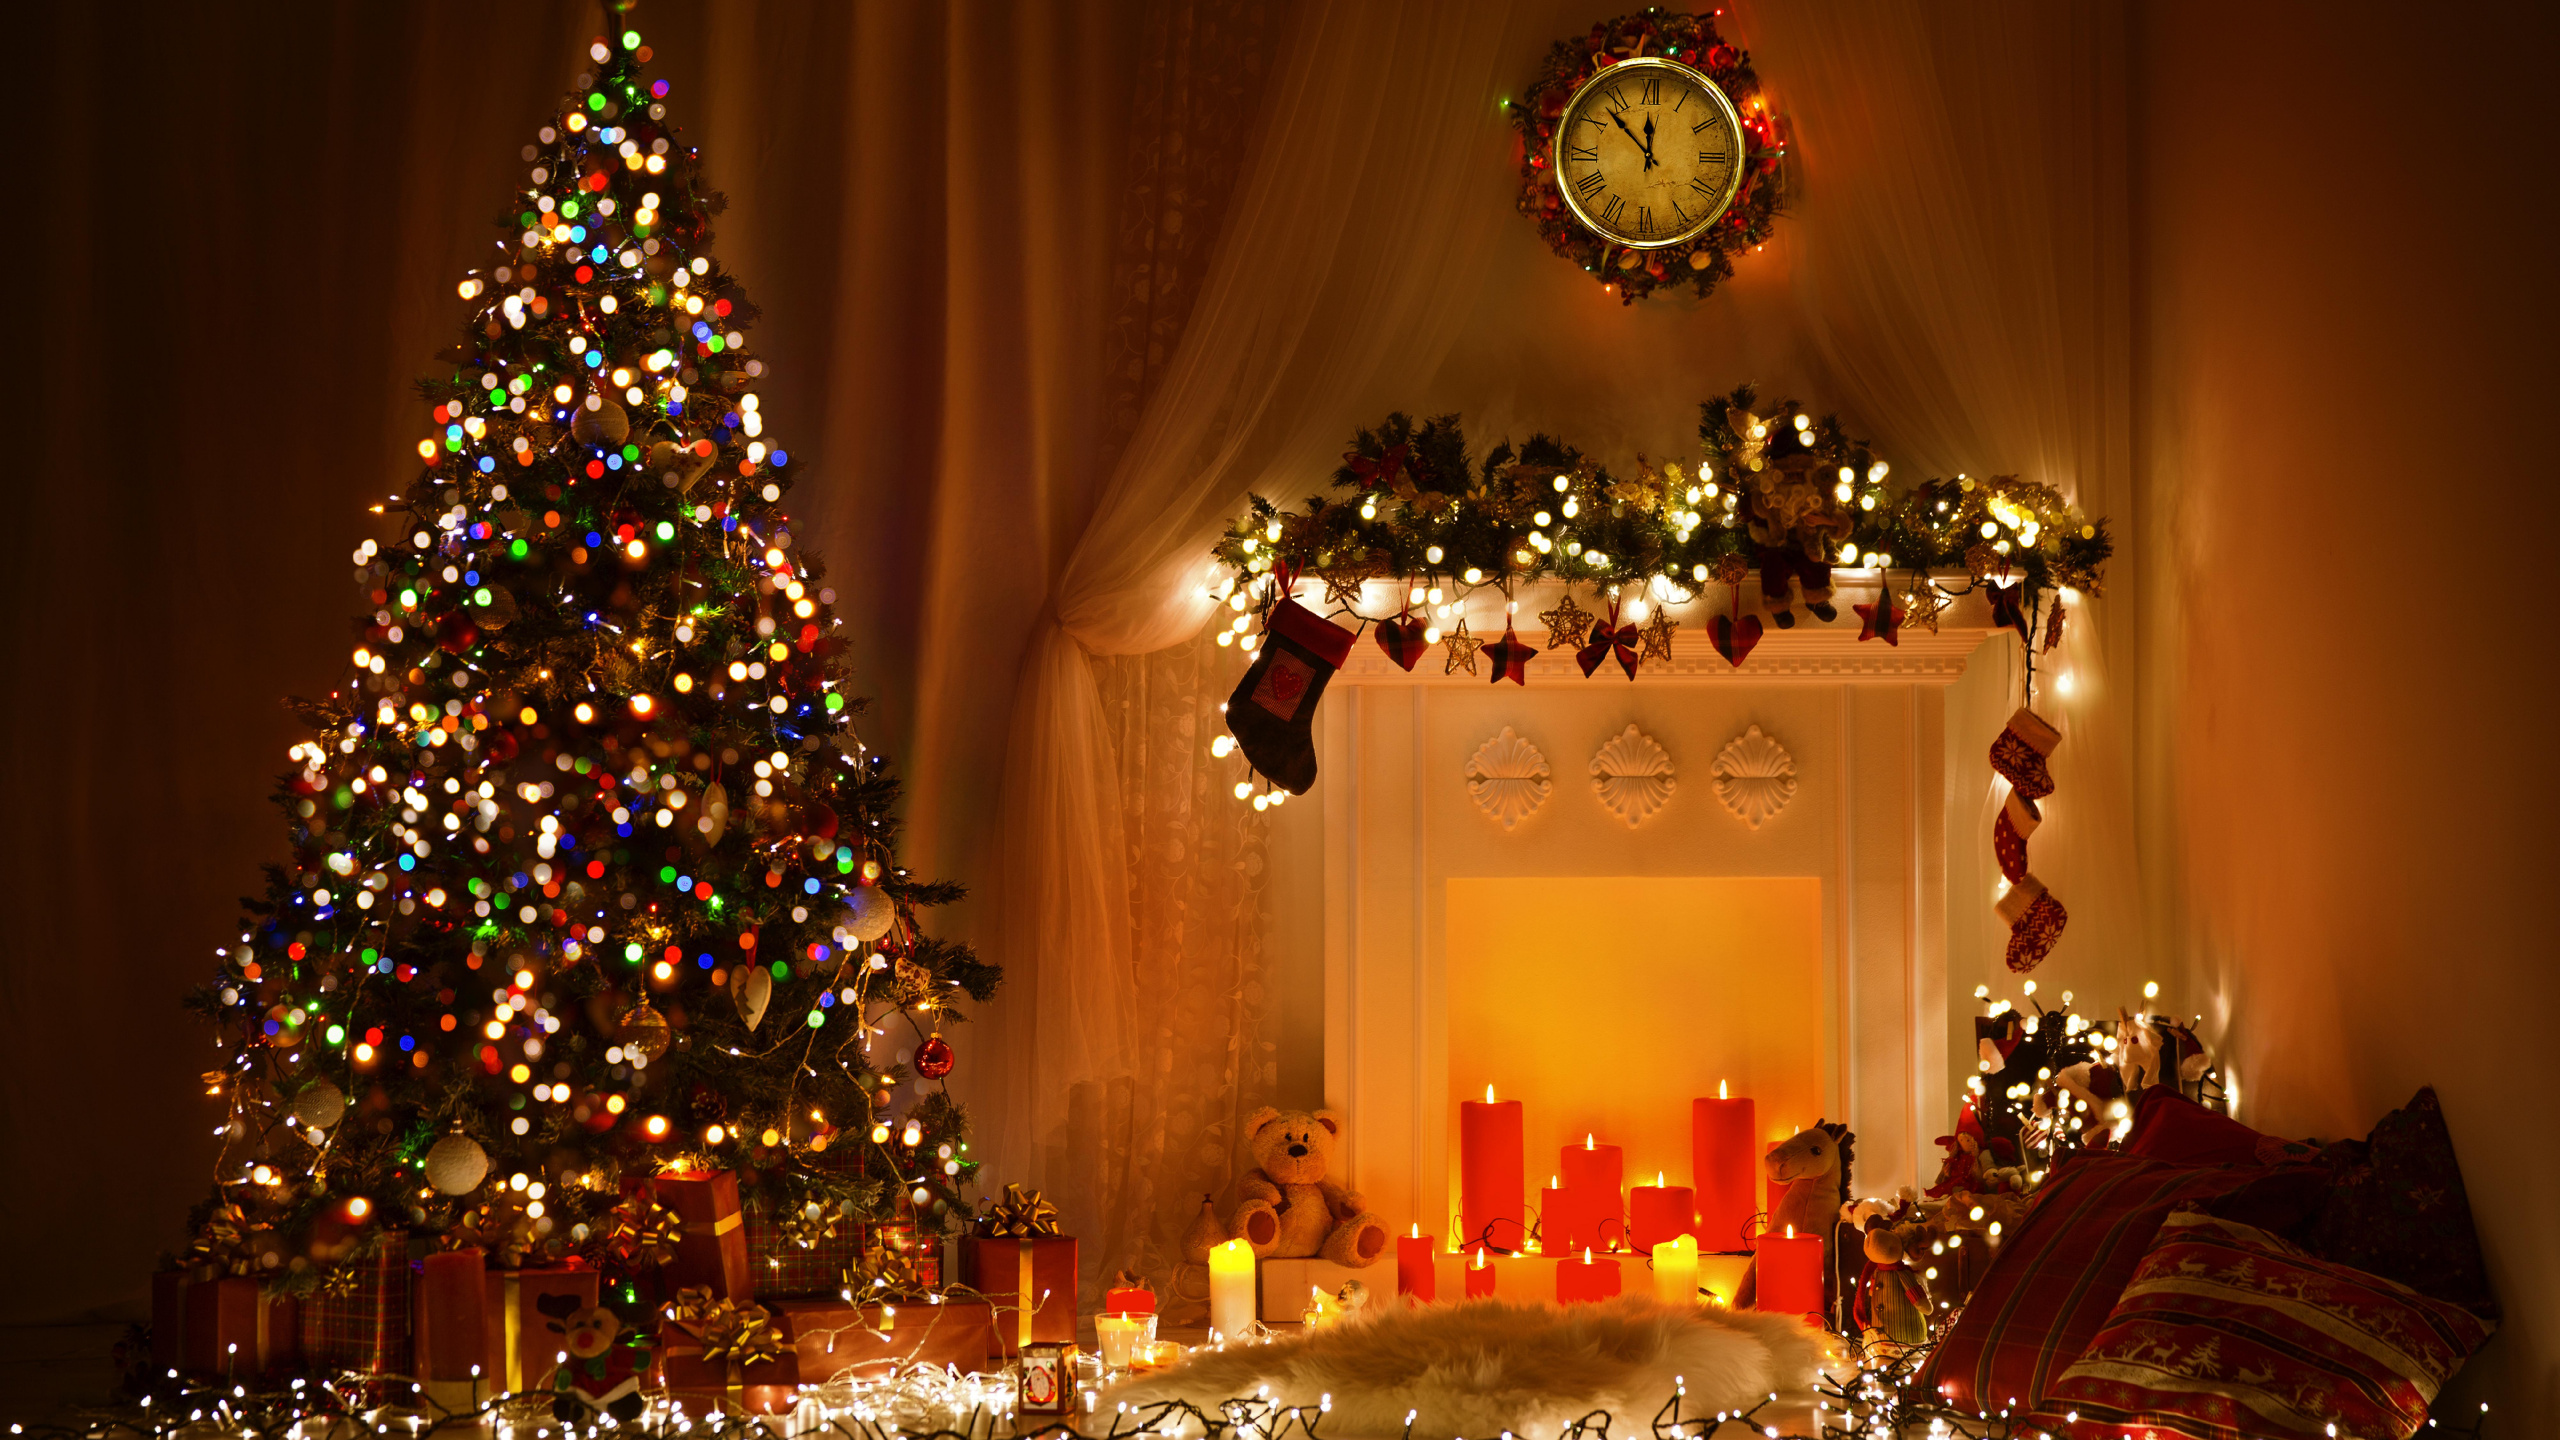 Weihnachten, Weihnachtsbaum, Weihnachtsbeleuchtung, Weihnachtsdekoration, Christmas Ornament. Wallpaper in 2560x1440 Resolution